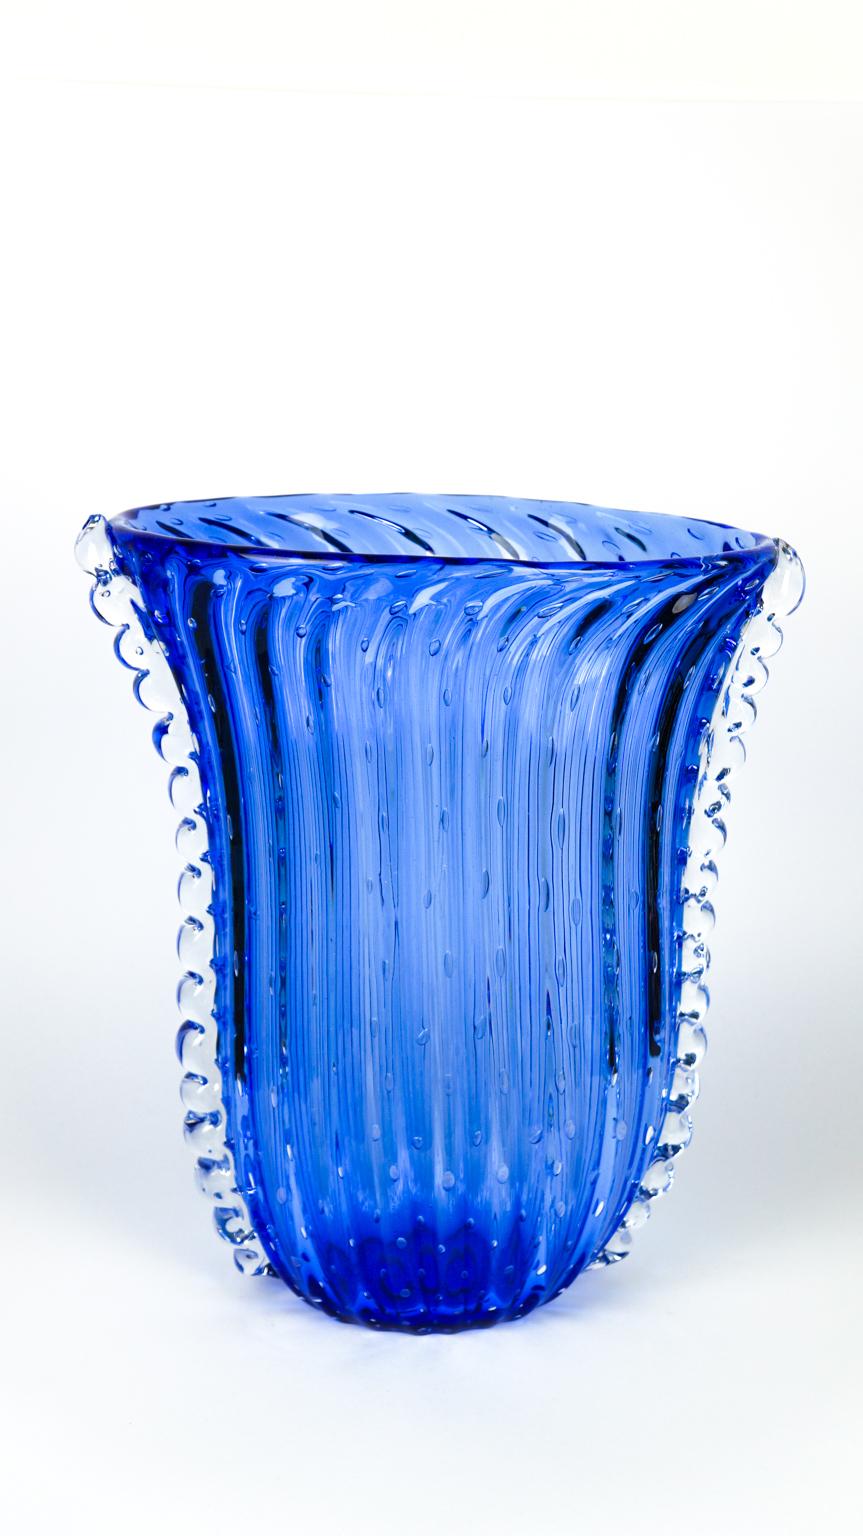 Handgefertigte Vase aus blauem Murano-Glas mit innerer Blasenverzierung und seitlichem Kristall.
Dieses fantastische Kunstwerk im Art-Déco-Stil verleiht Ihrer Umgebung einen zusätzlichen Hauch von Klasse.
Vase signiert mit Gravur: Made Murano